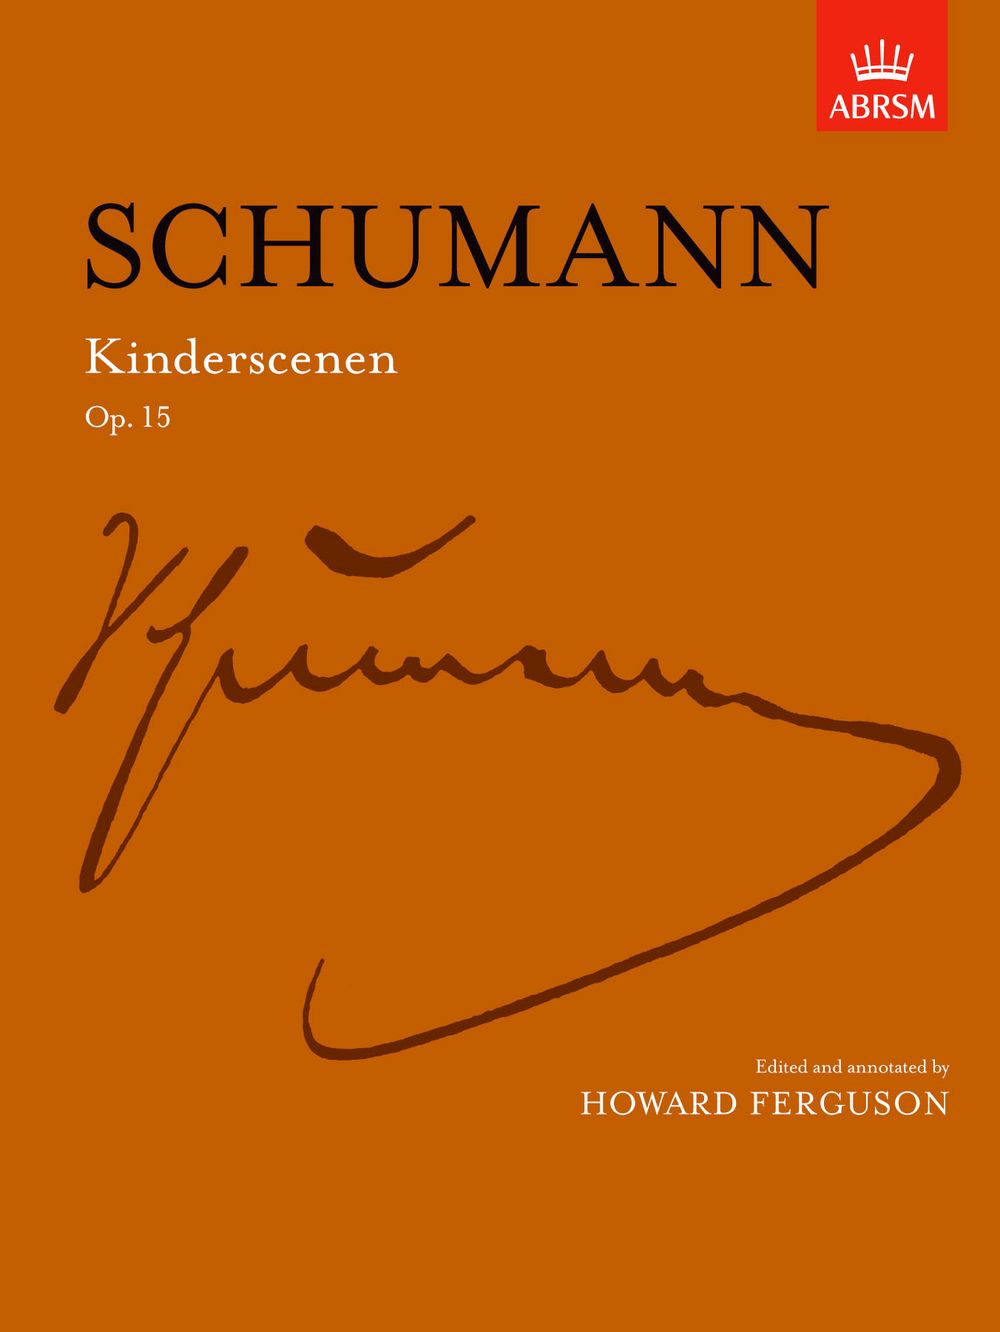 Robert Schumann: Kinderscenen Op.15: Piano: Instrumental Album